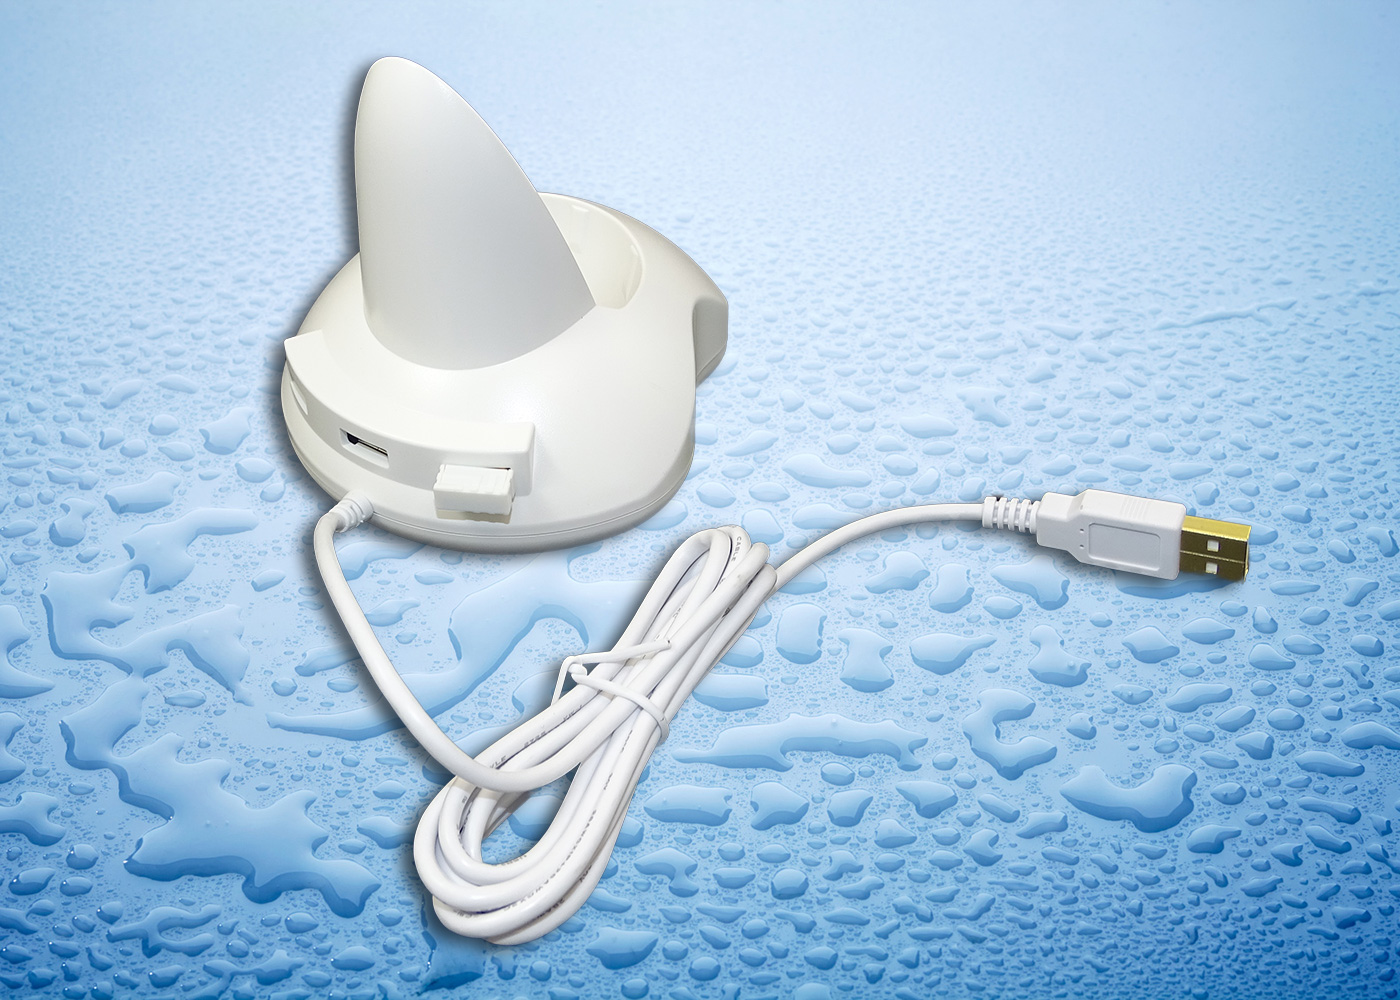 Souris médicale sans fil rechargeable STWM042WE – Détail socle avec HUB USB